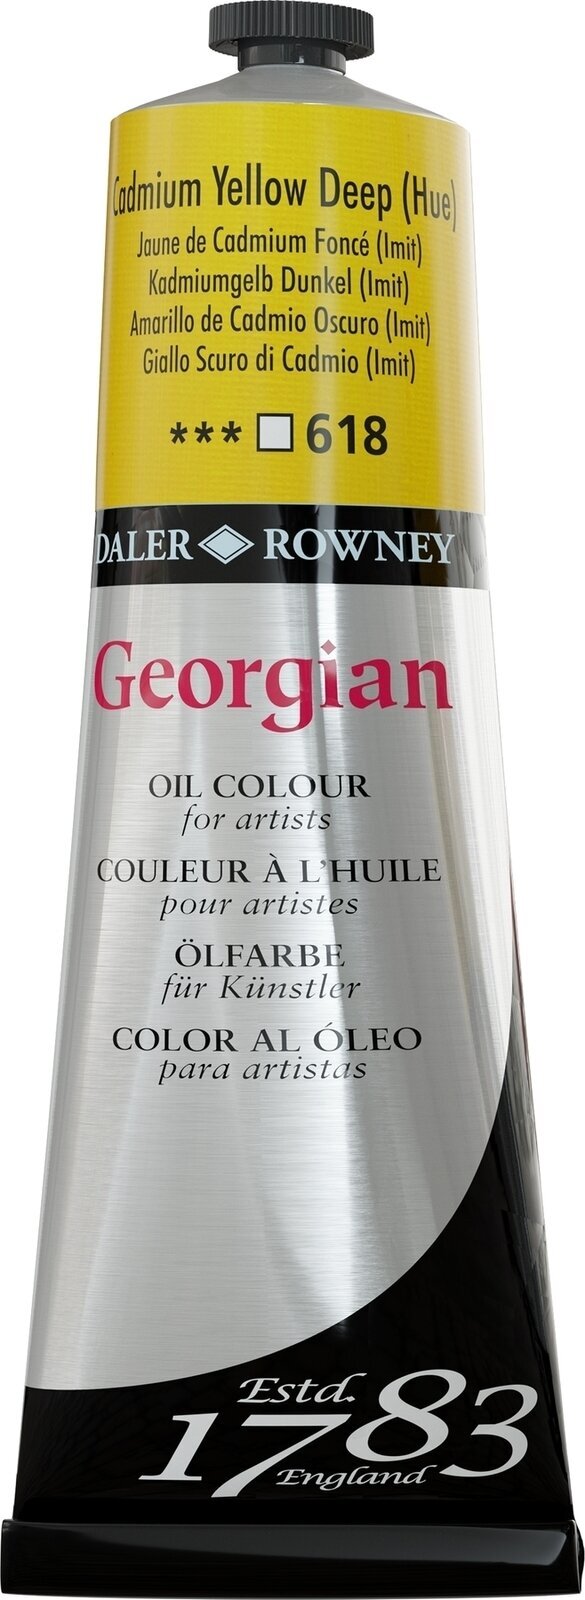 Aceite de colores Daler Rowney Georgian Oil Paint Cadmium Yellow Deep Hue 225 ml 1 pc